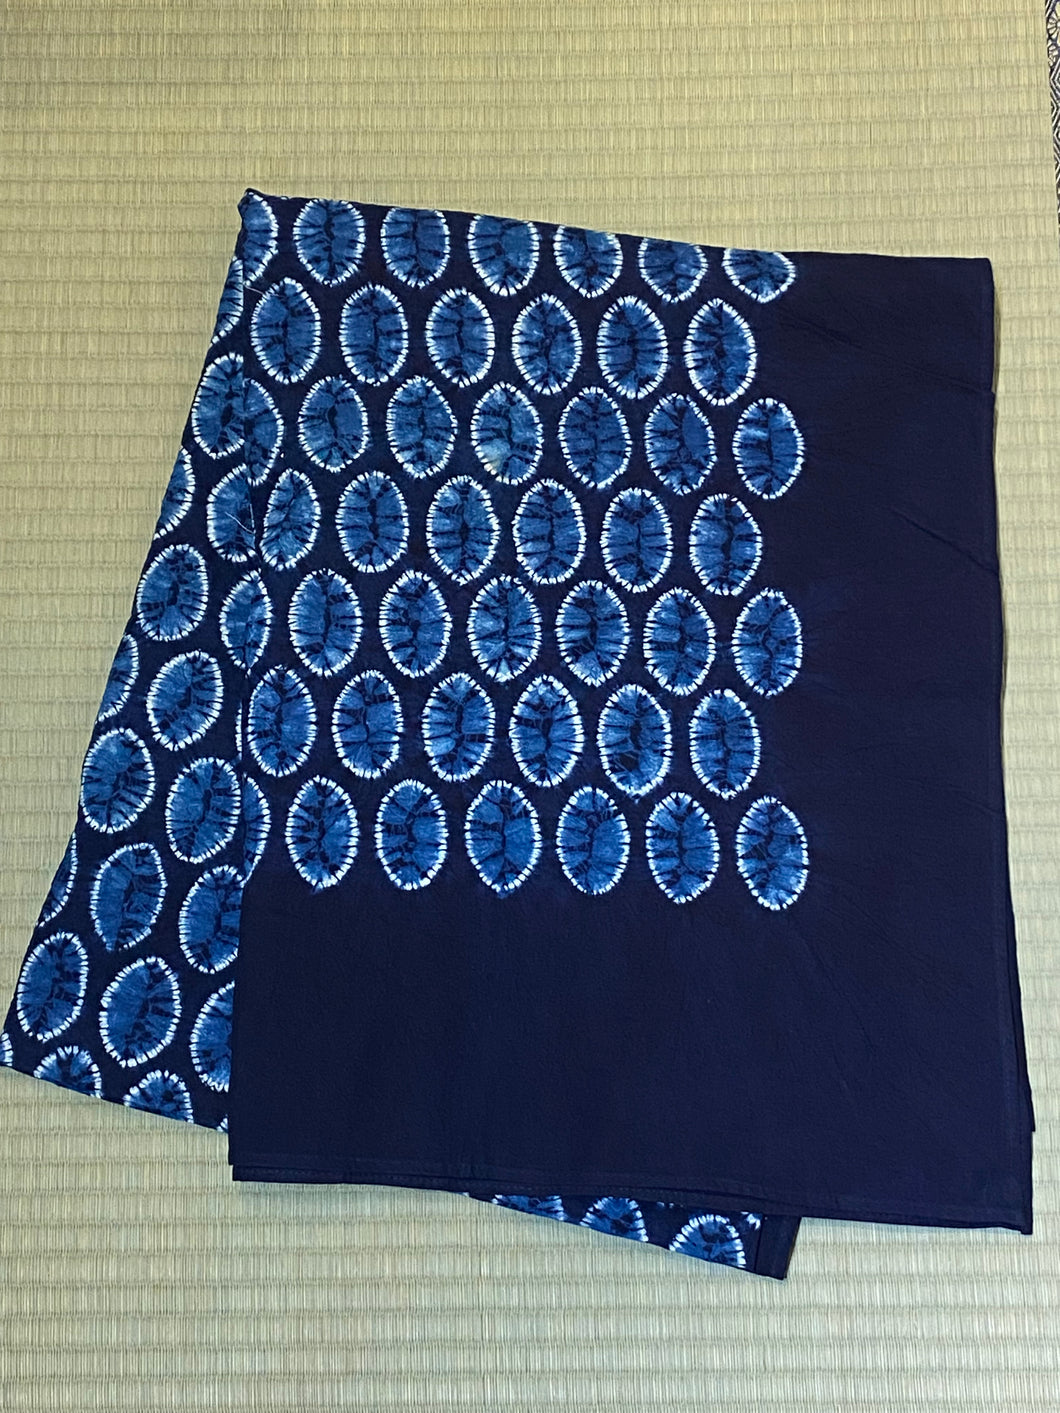 Furoshiki Square Wrapping Cloth - shibori indigo cotton